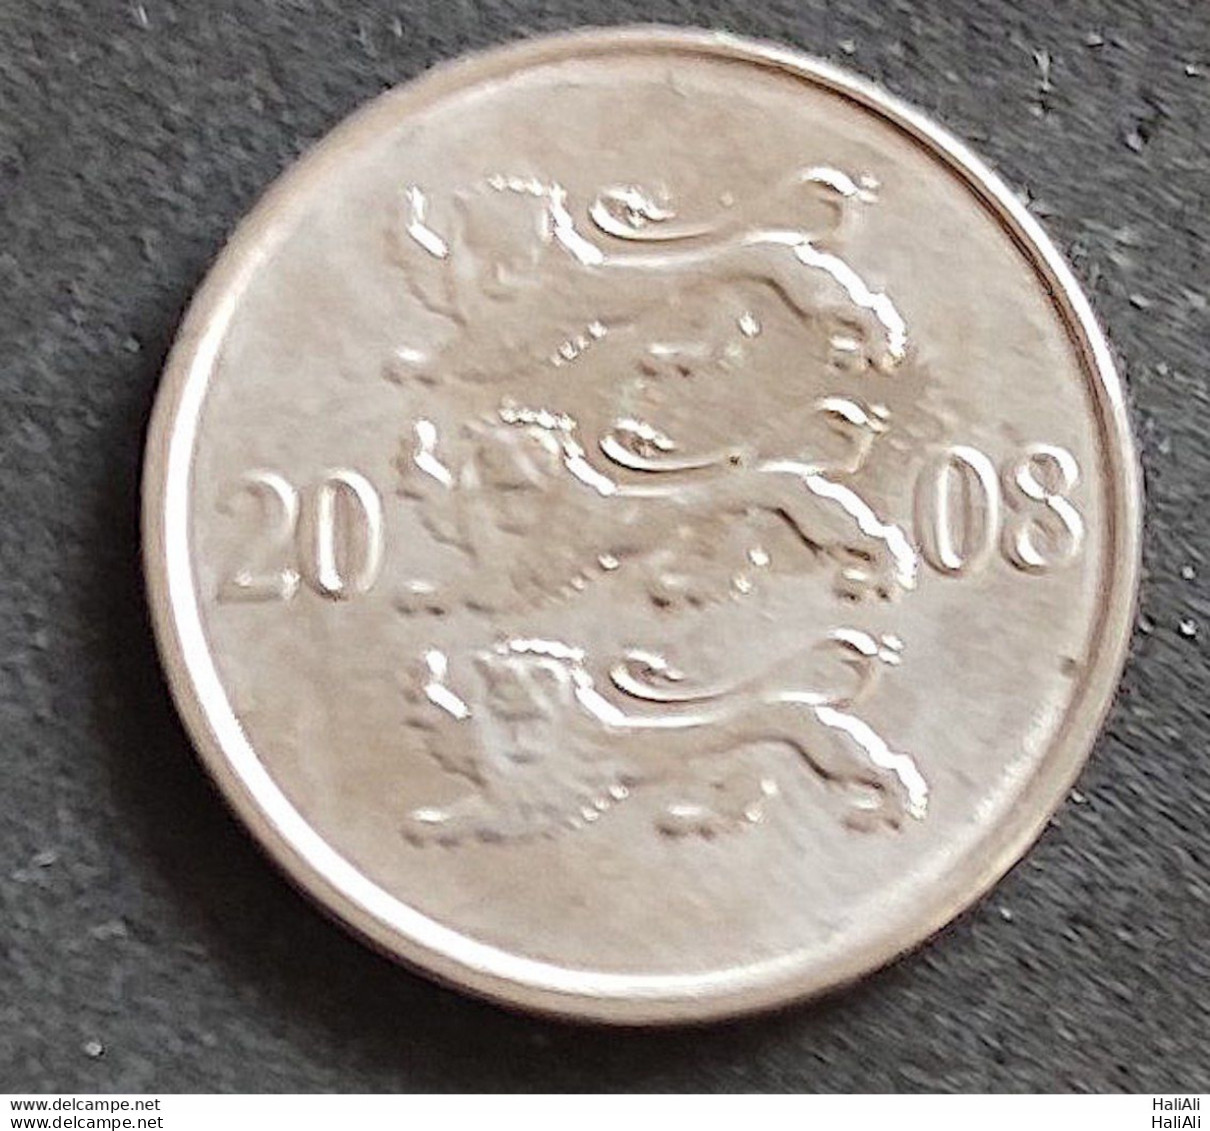 Coin Estonia 2008 20 Senti 1 - Estland